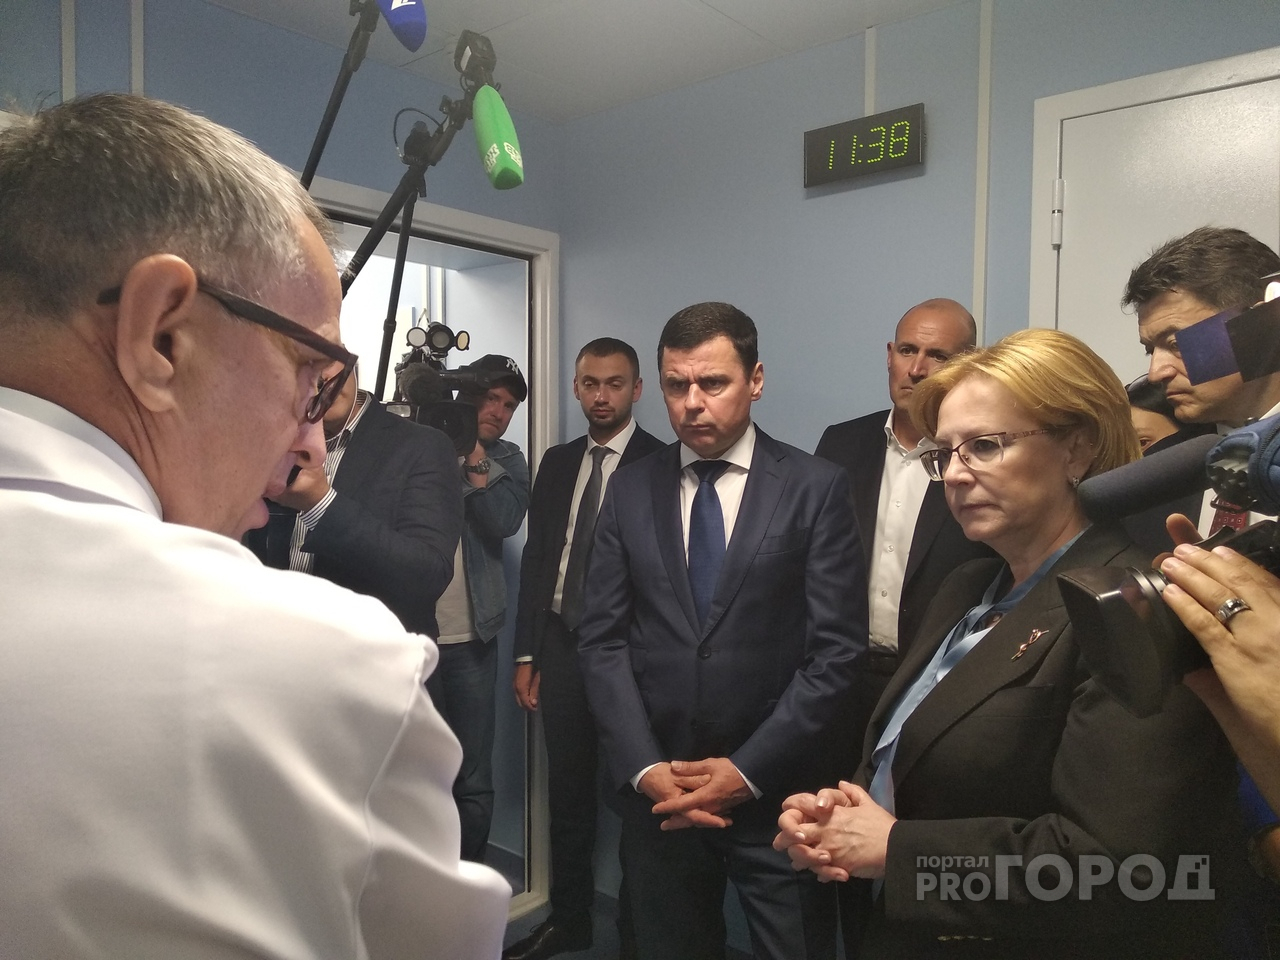 Час на опухоль: министру здравоохранения рассказали о суперметоде борьбы с раком в Ярославле